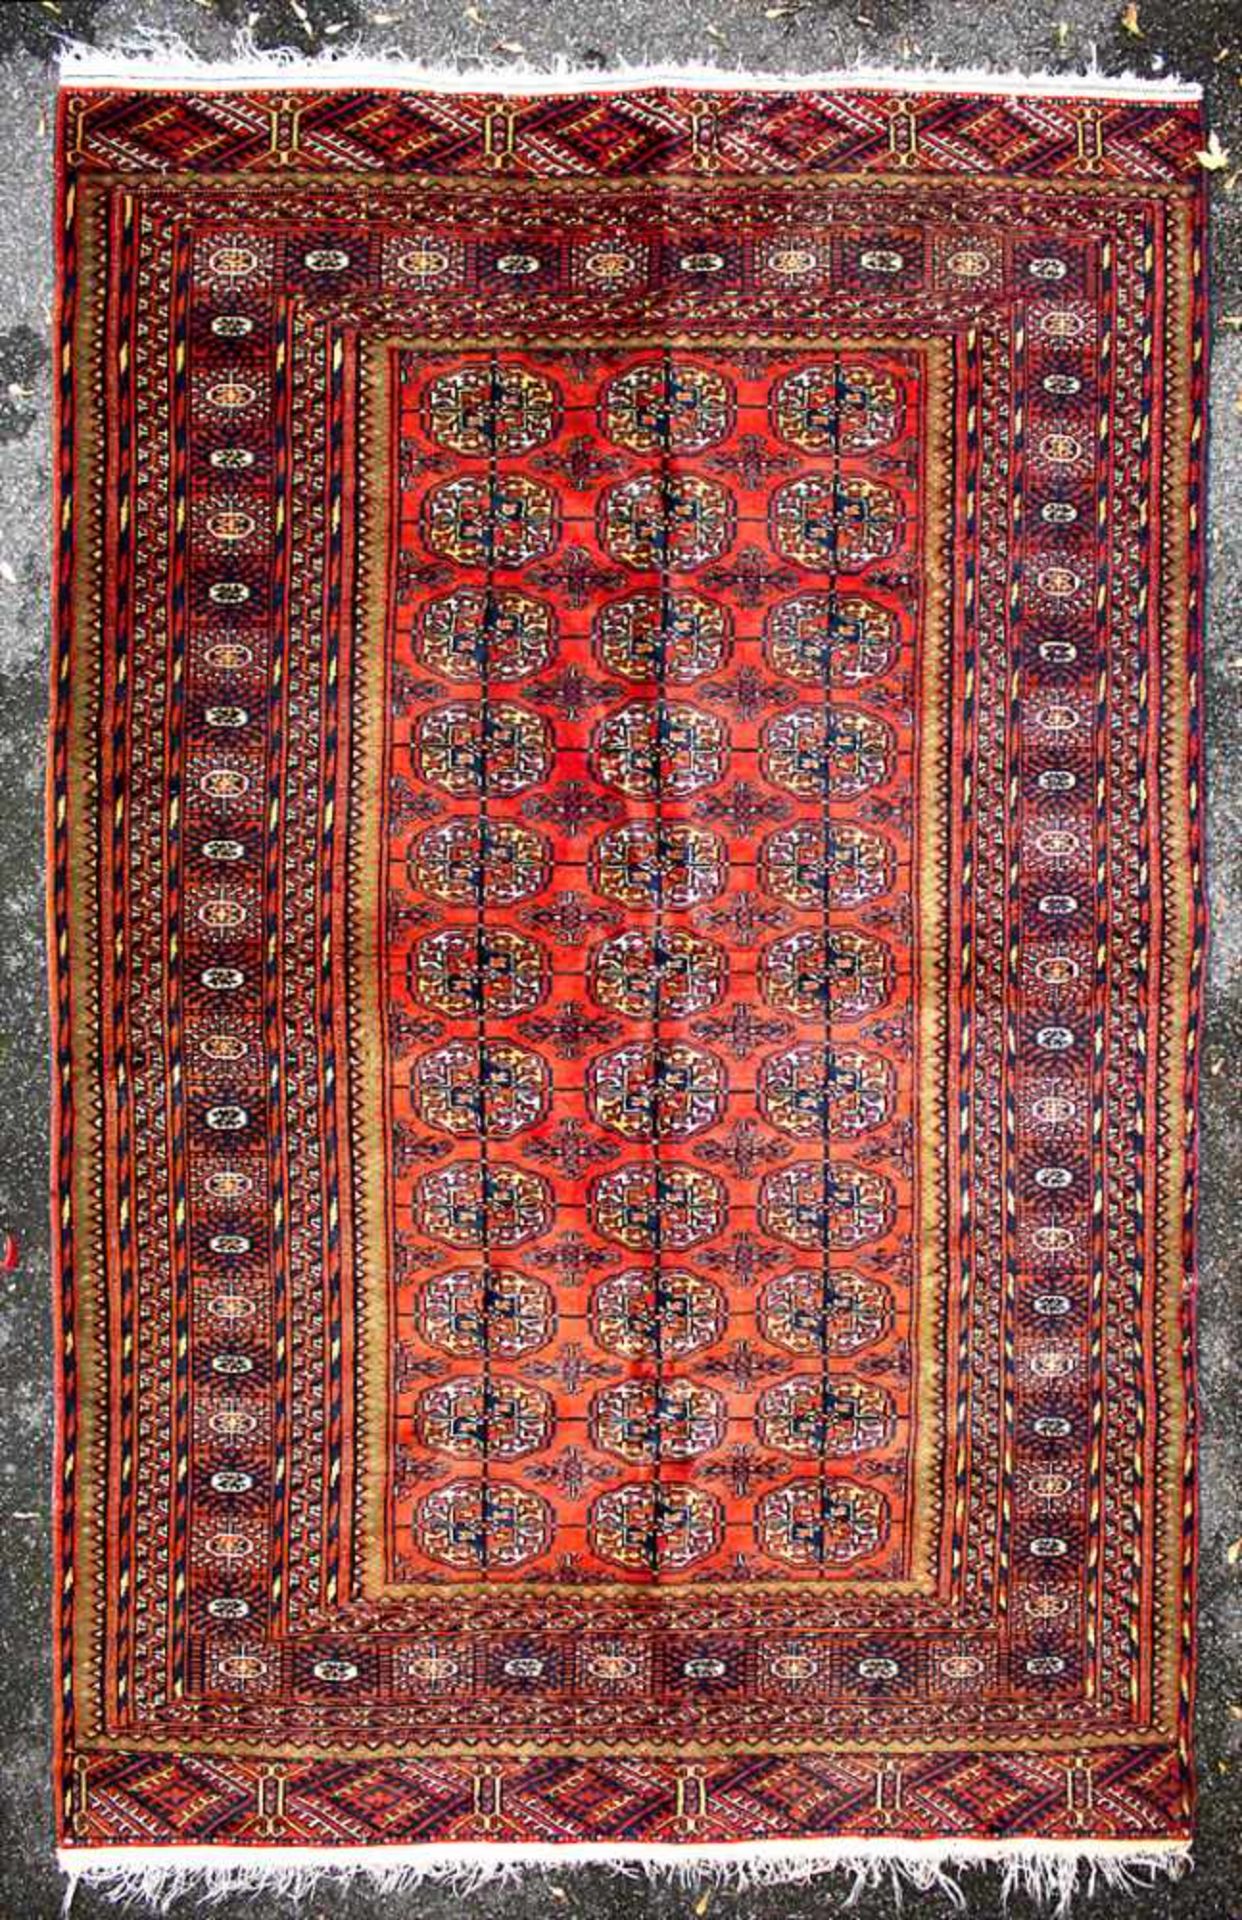 Orientteppich / An oriental carpetMaterial: Wolle auf Baumwolle, Maße: 256 x 160 cm, Zustand: